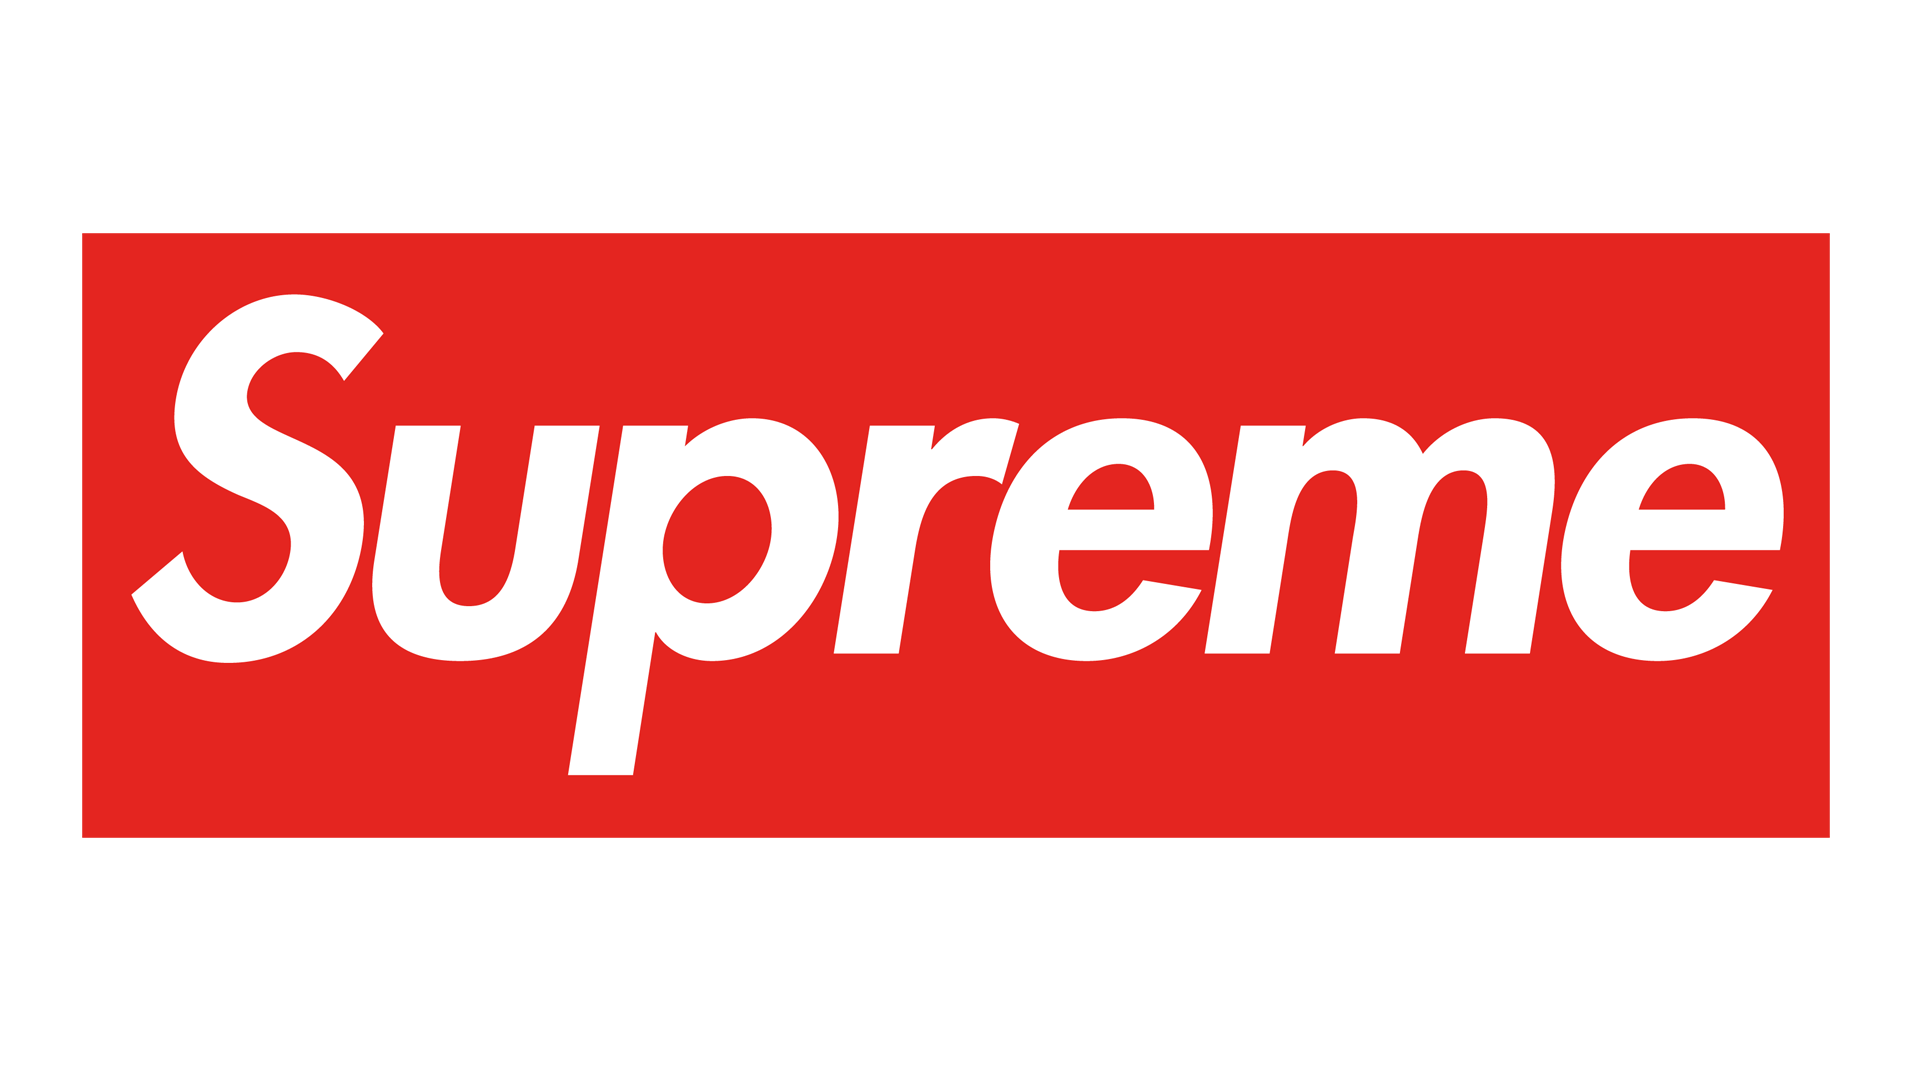 Surpreme Logo - Supreme Logo, Supreme Symbol, Meaning, History and Evolution